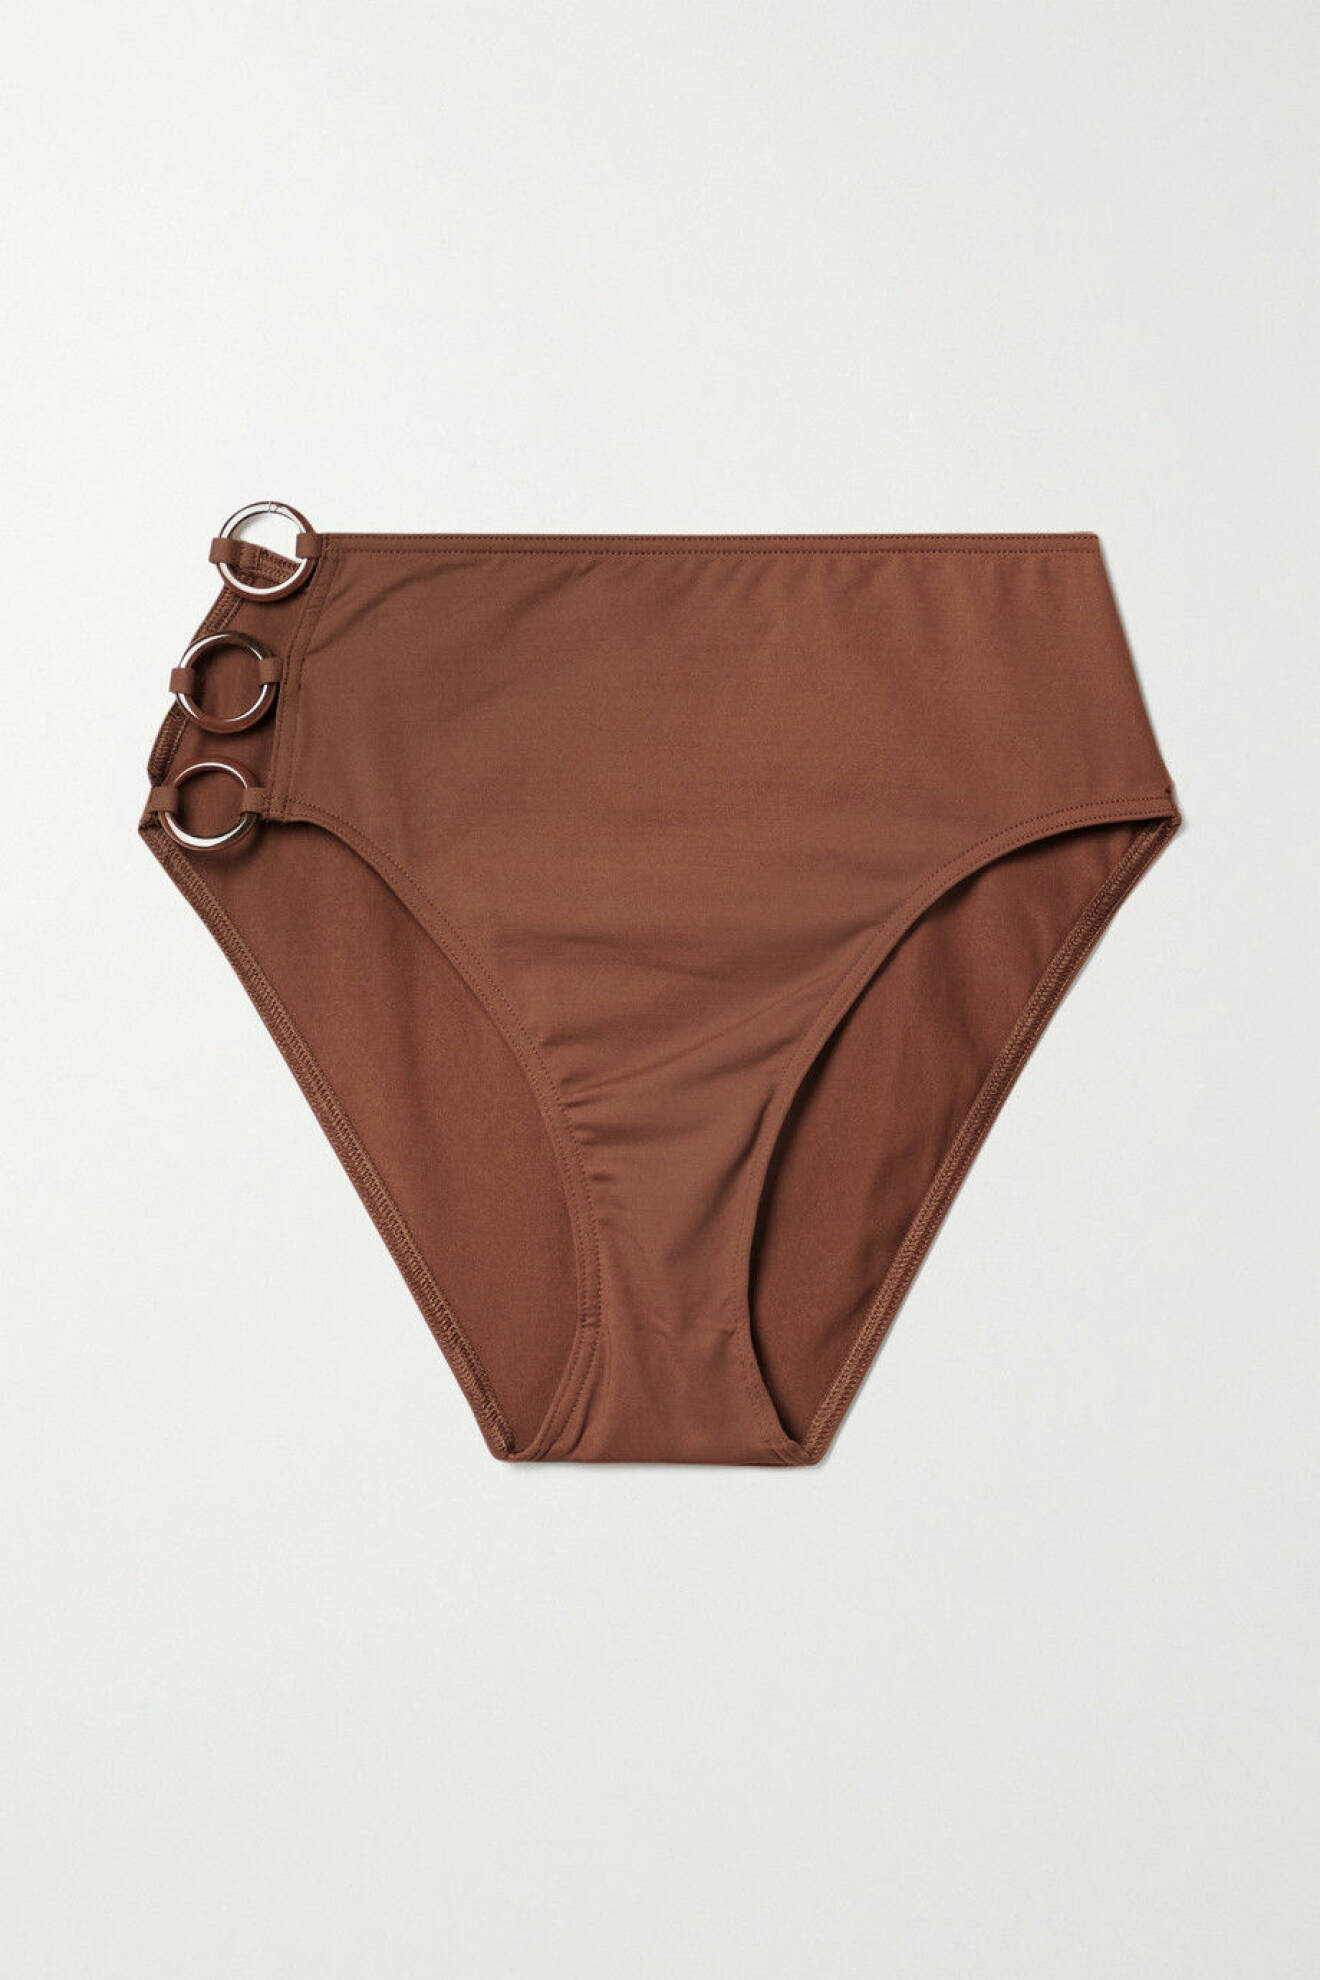 Bruna bikinitrosor med hög midja och cut out i ena sidan med tre bruna ringar som detalj. Bikinitrosor från Eres.